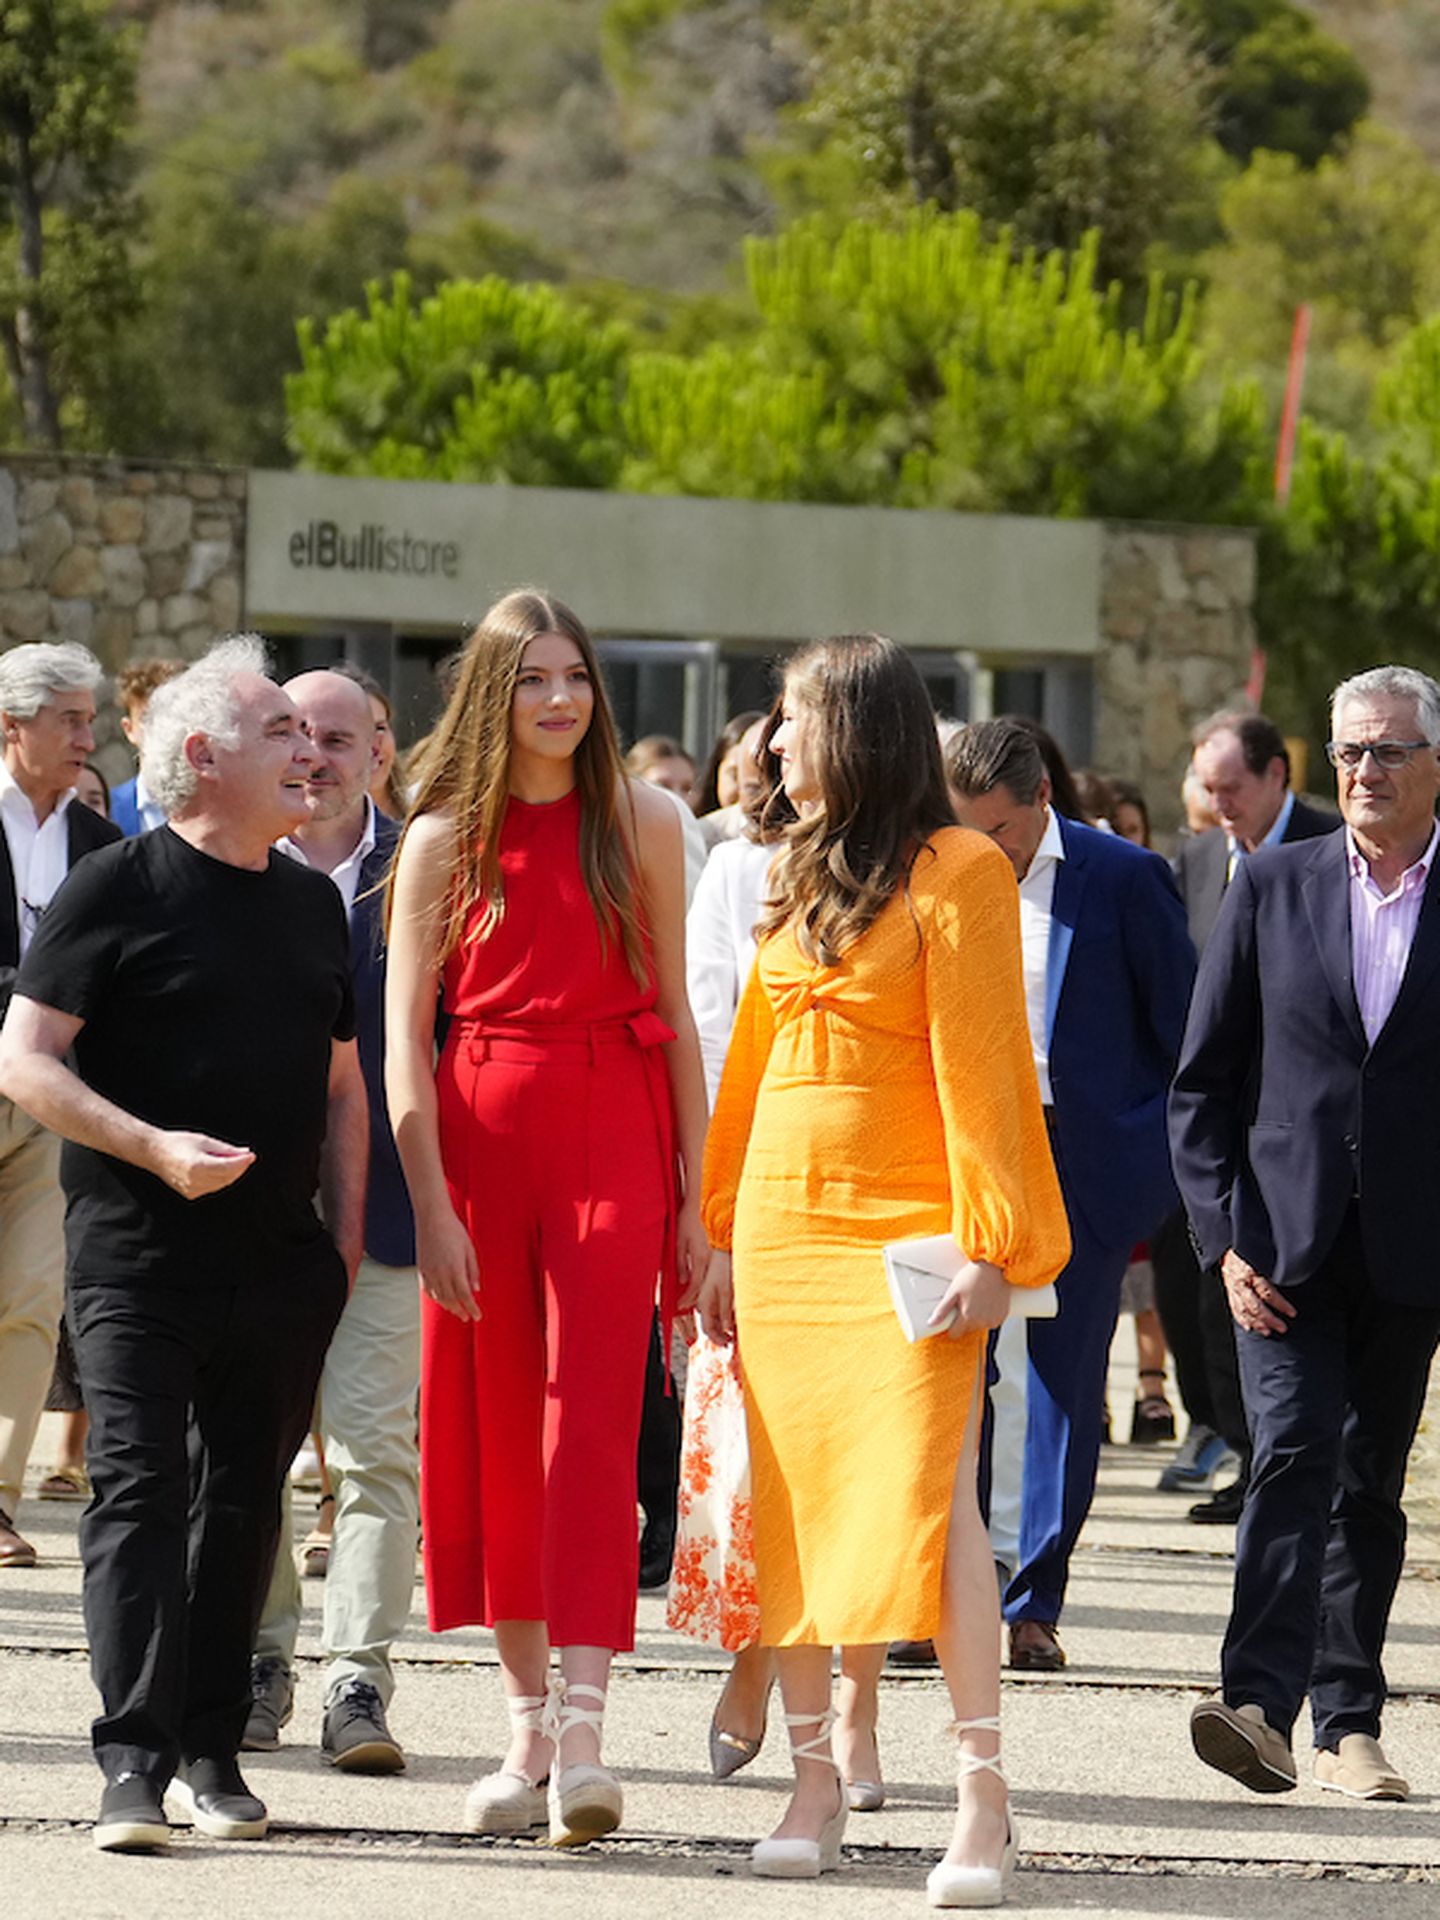 La princesa Leonor y la infanta Sofía visitan el Museo elBulli1846 en Roses junto a Ferran Adrià / Limited Pictures